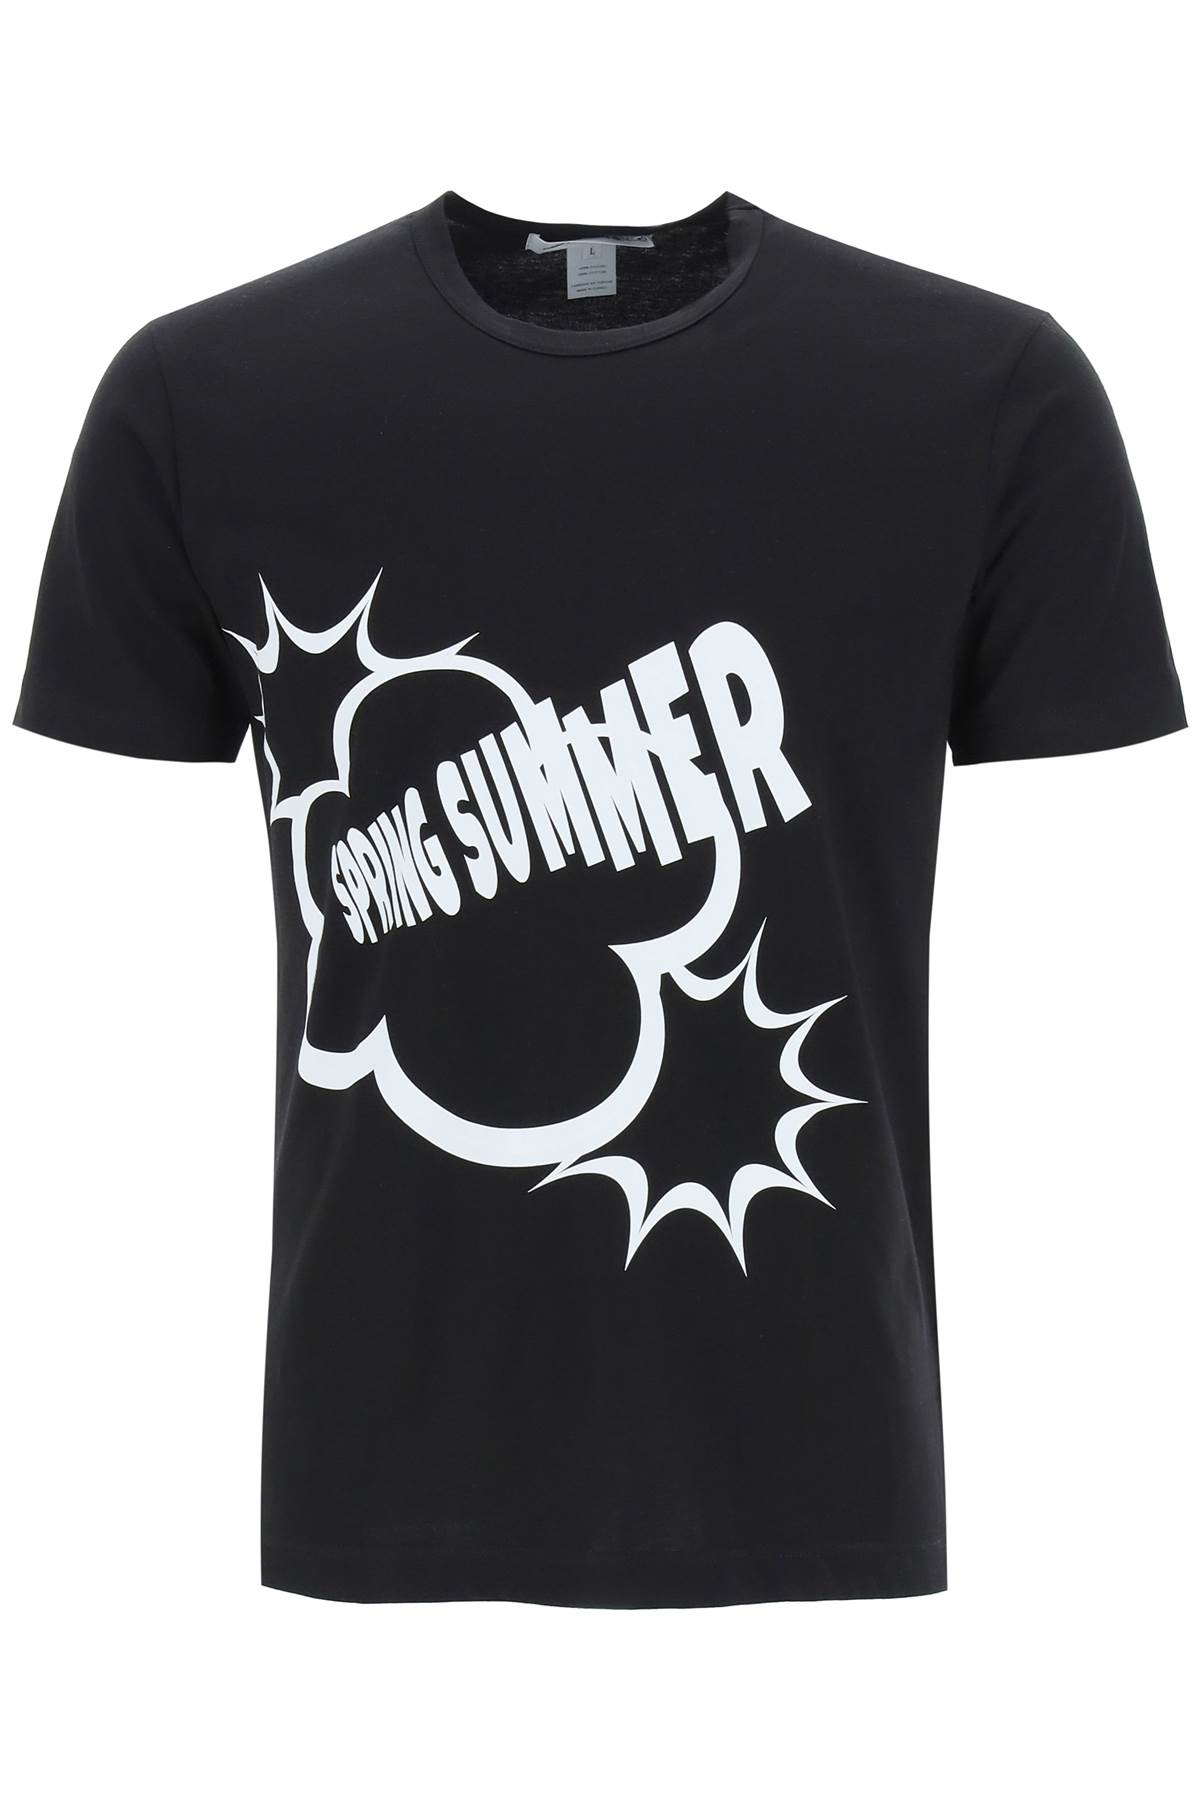 Comme des Garçons Shirt Spring Summer Print T-shirt